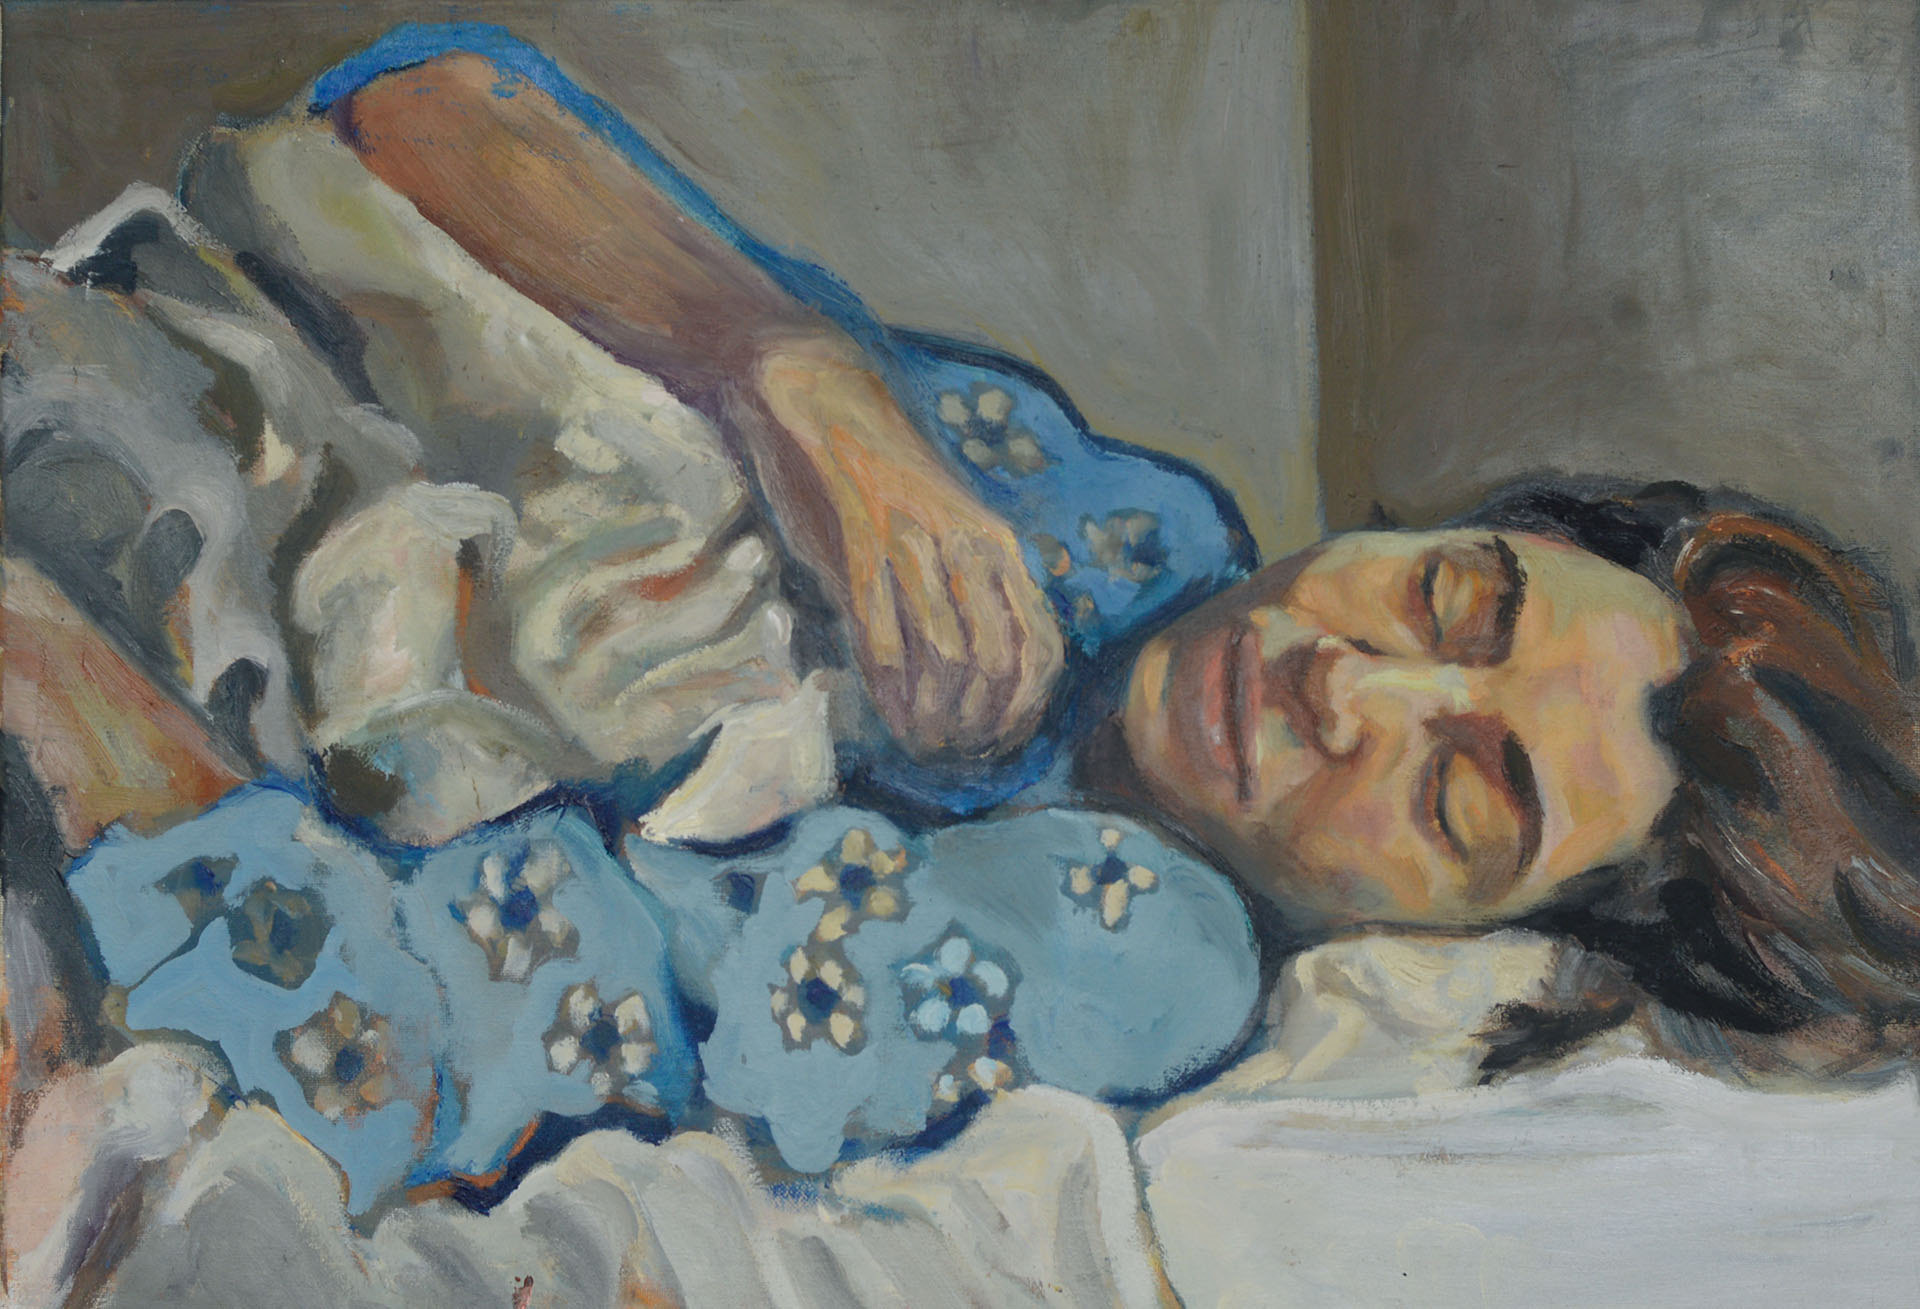 Utrzymany w chłodnej tonacji obraz przedstawia toczoną bielą pościeli, ujętą od pasa w górę śpiącą dziewczynę w kwiecistej, błękitnej koszuli obróconą twarzą do widza. Od prawej strony poranne, zimne światło pada na jej głowę.